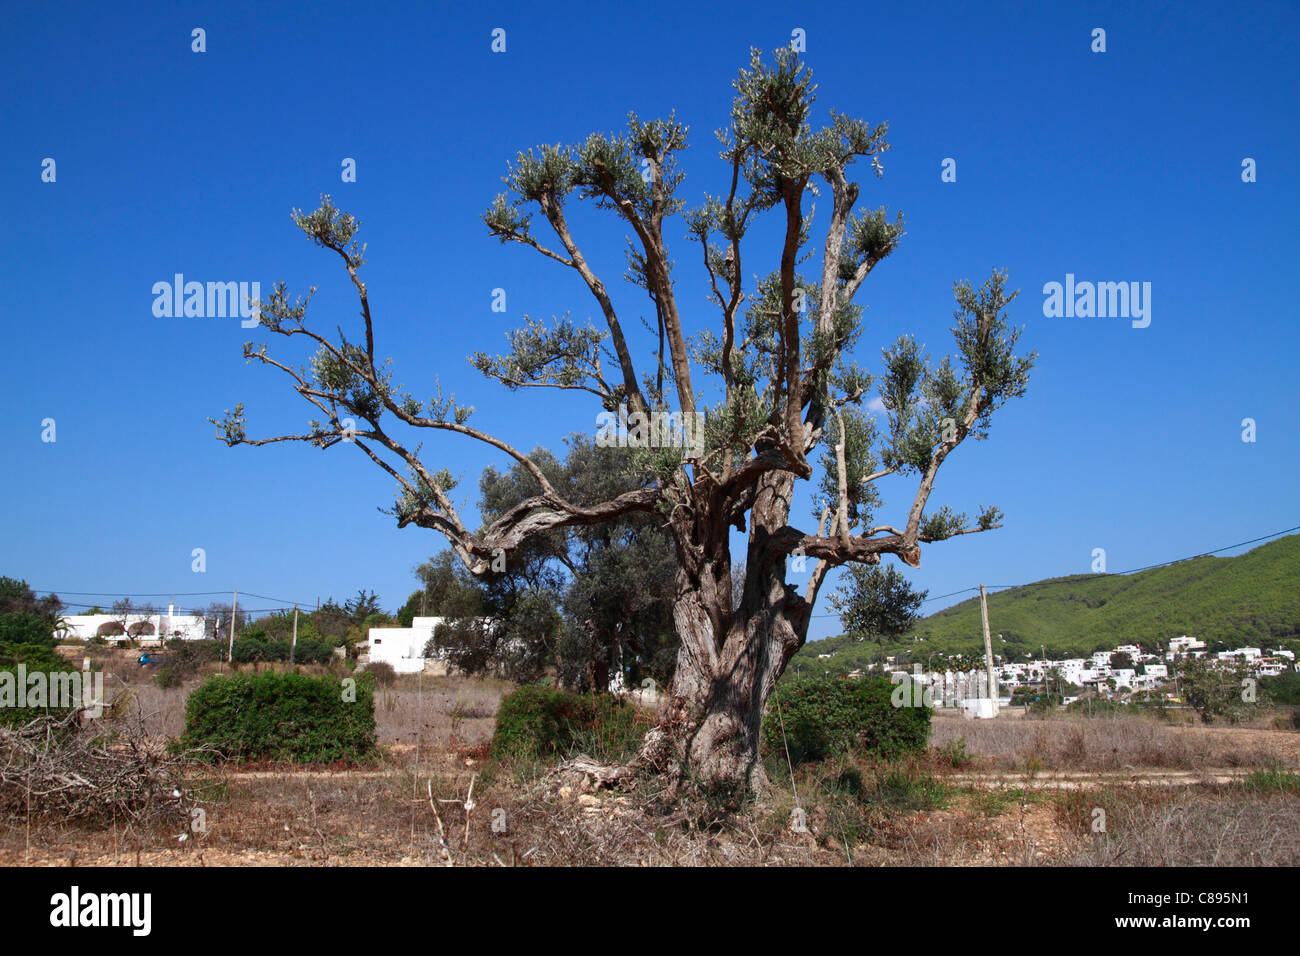 Oddly pruned olive tree Stock Photo